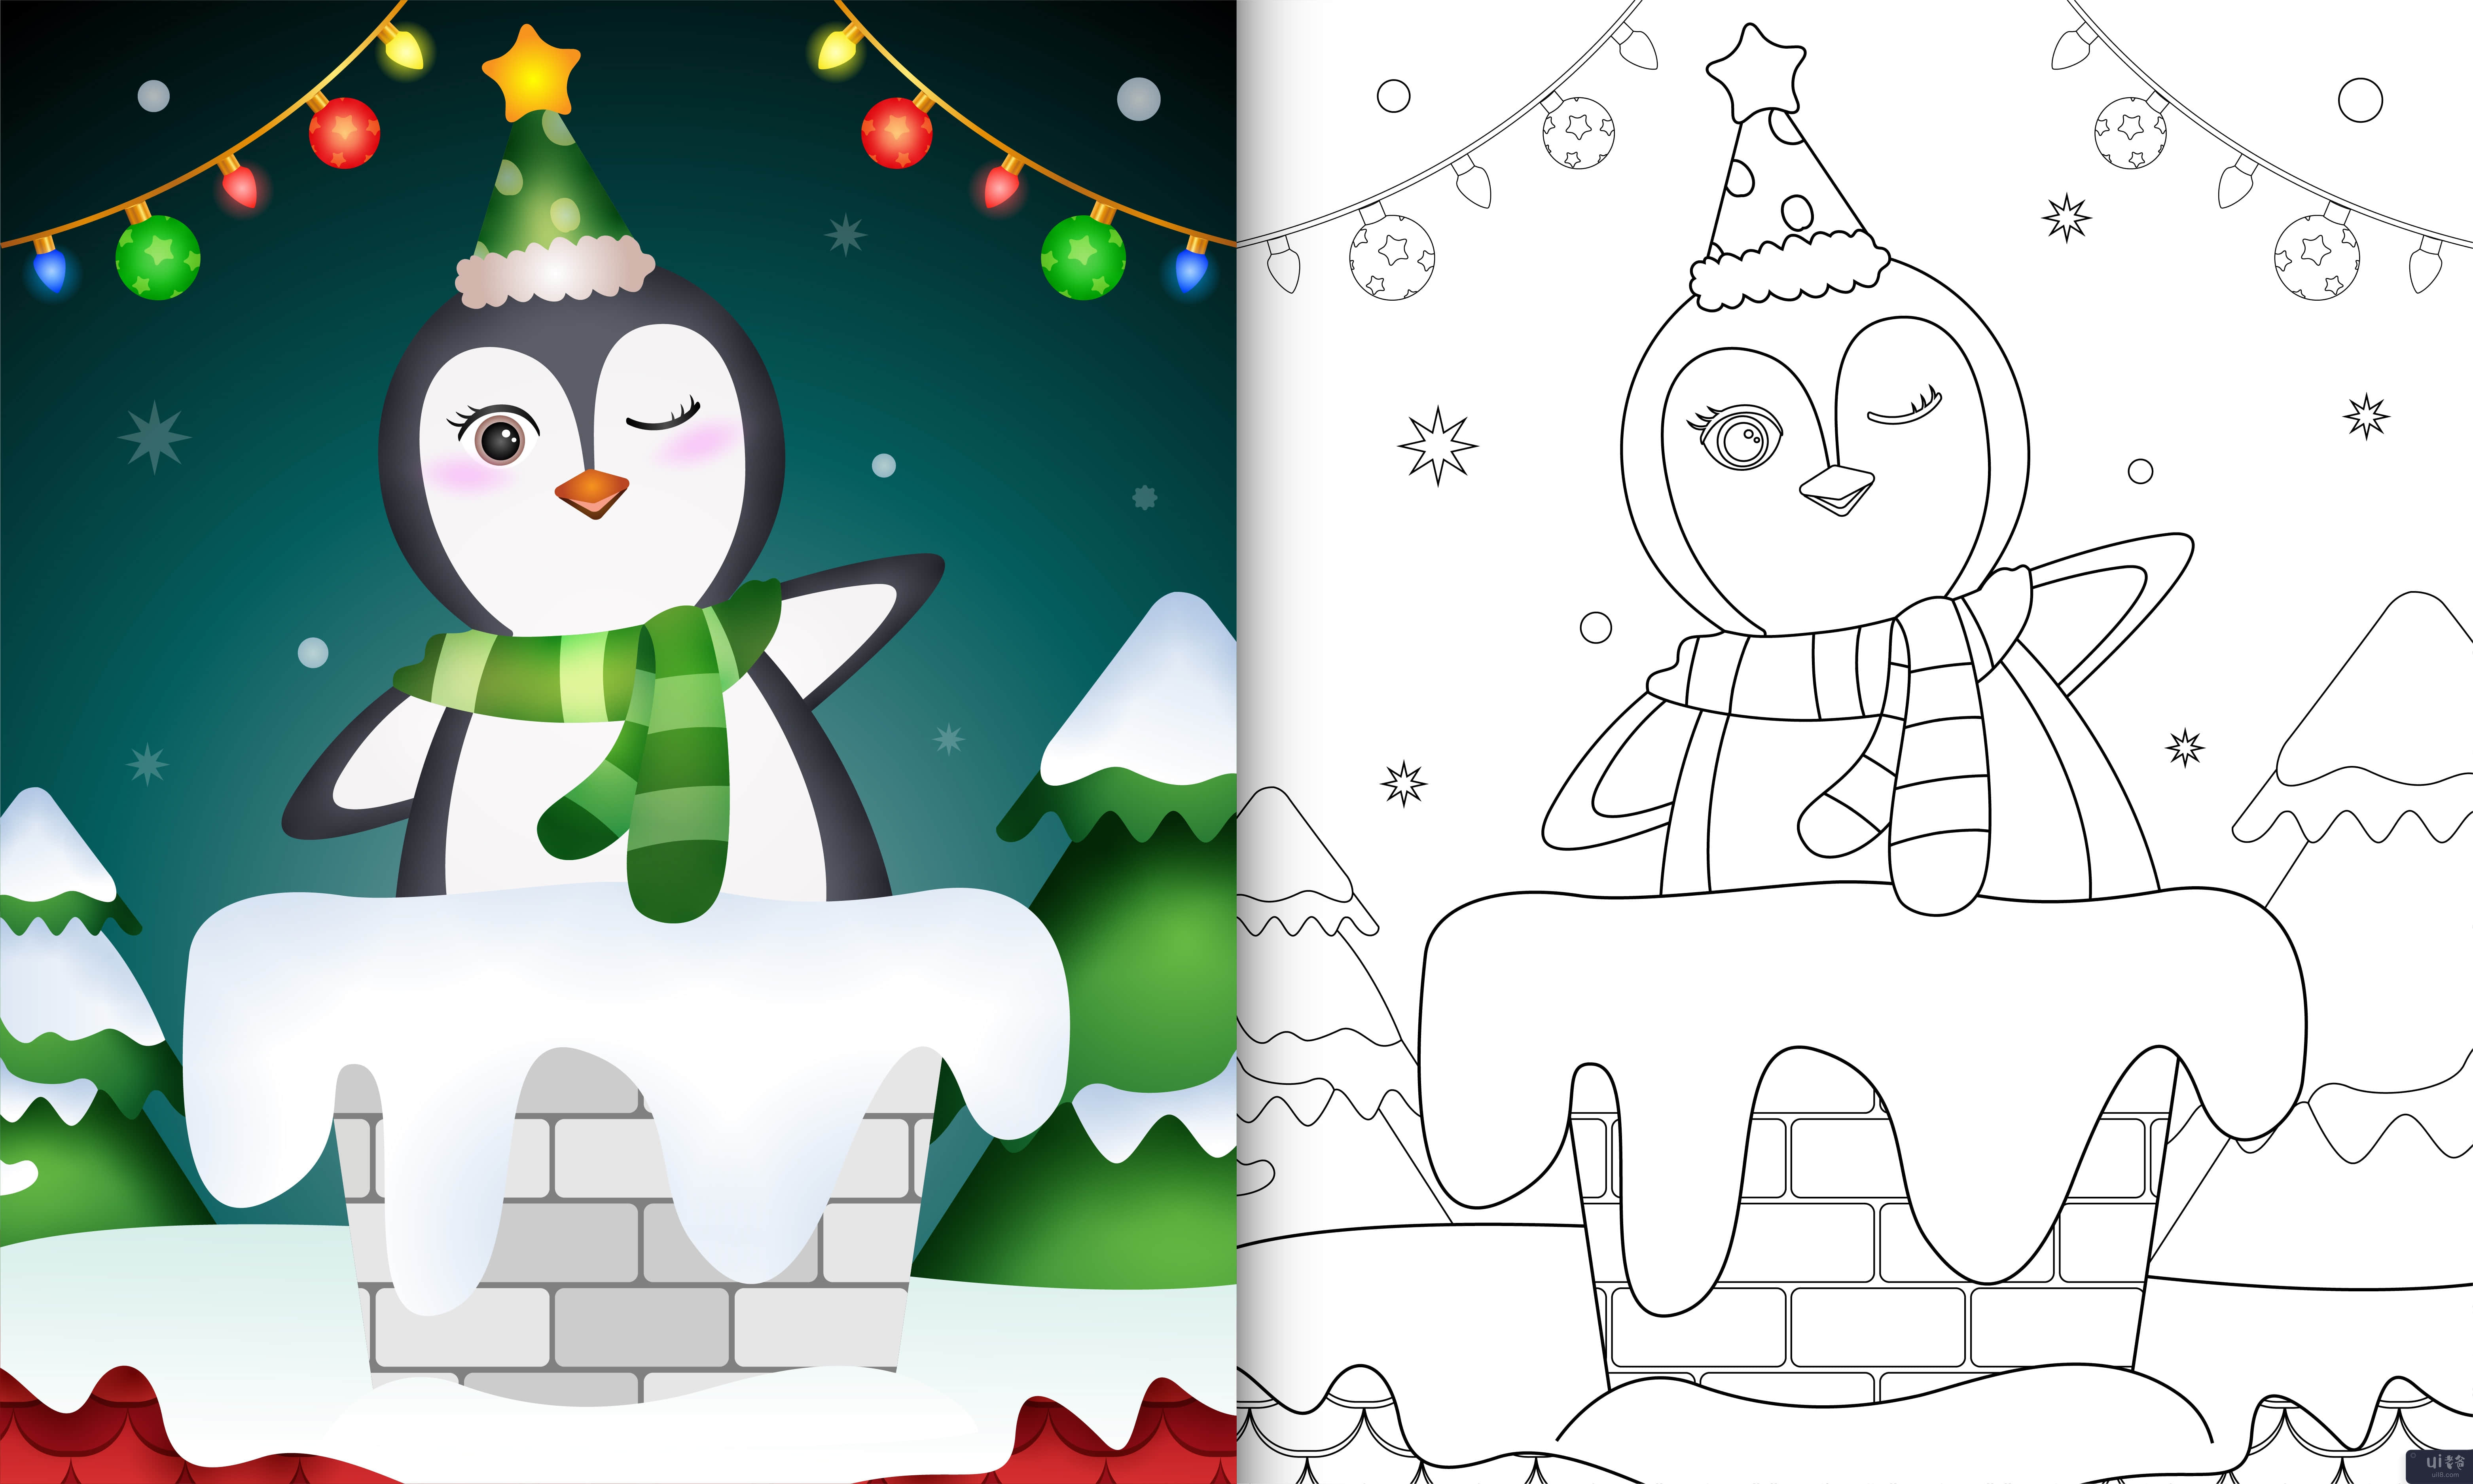 用帽子和围巾在烟囱里给可爱企鹅的孩子涂色书(coloring book for kids with a cute penguin using hat and scarf in chimney)插图2